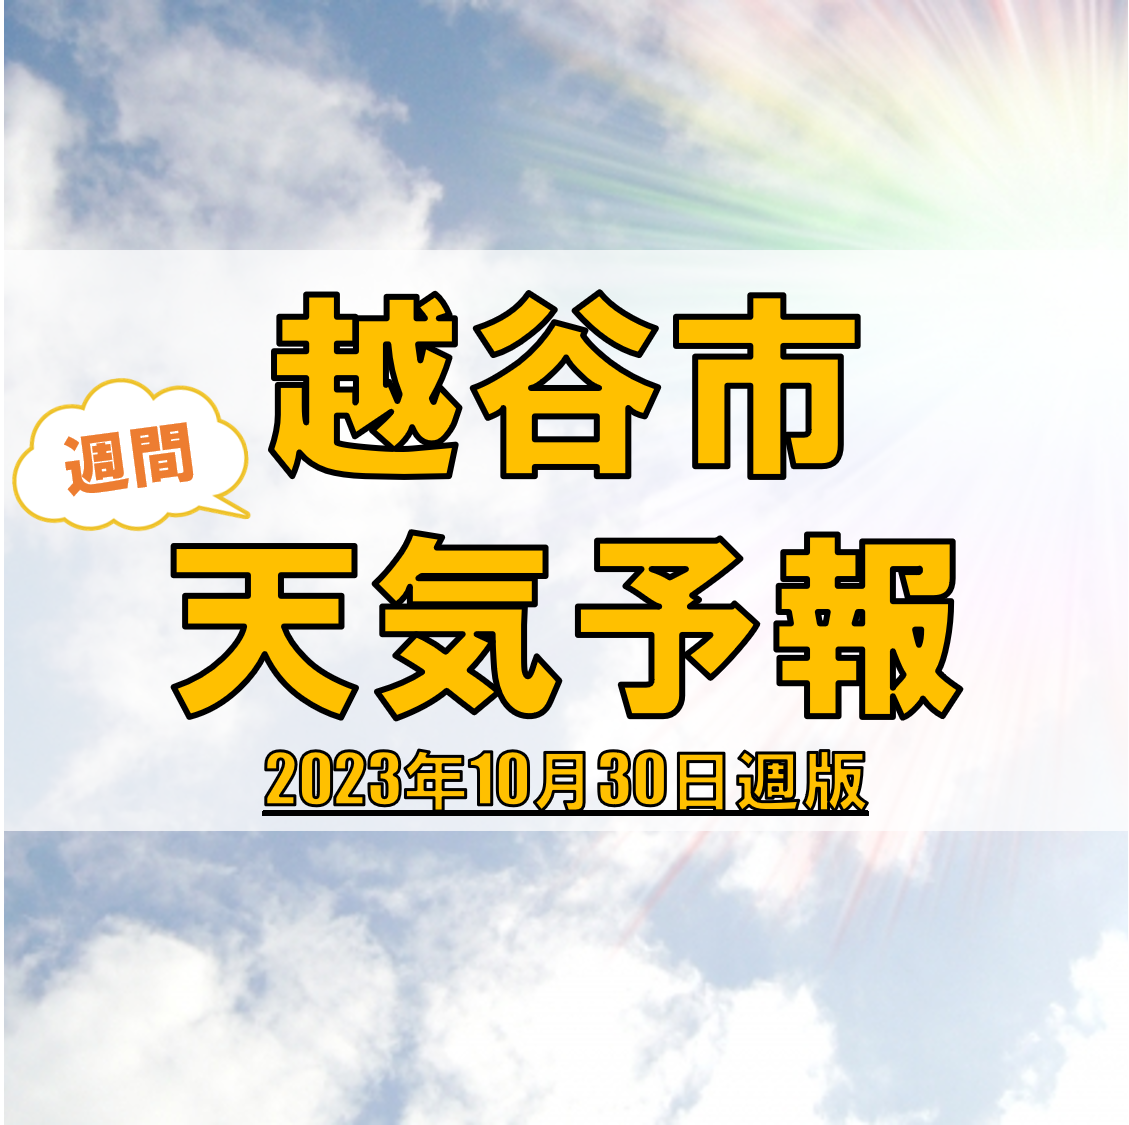 越谷市の天気 週間予報【2023年10月30日週】